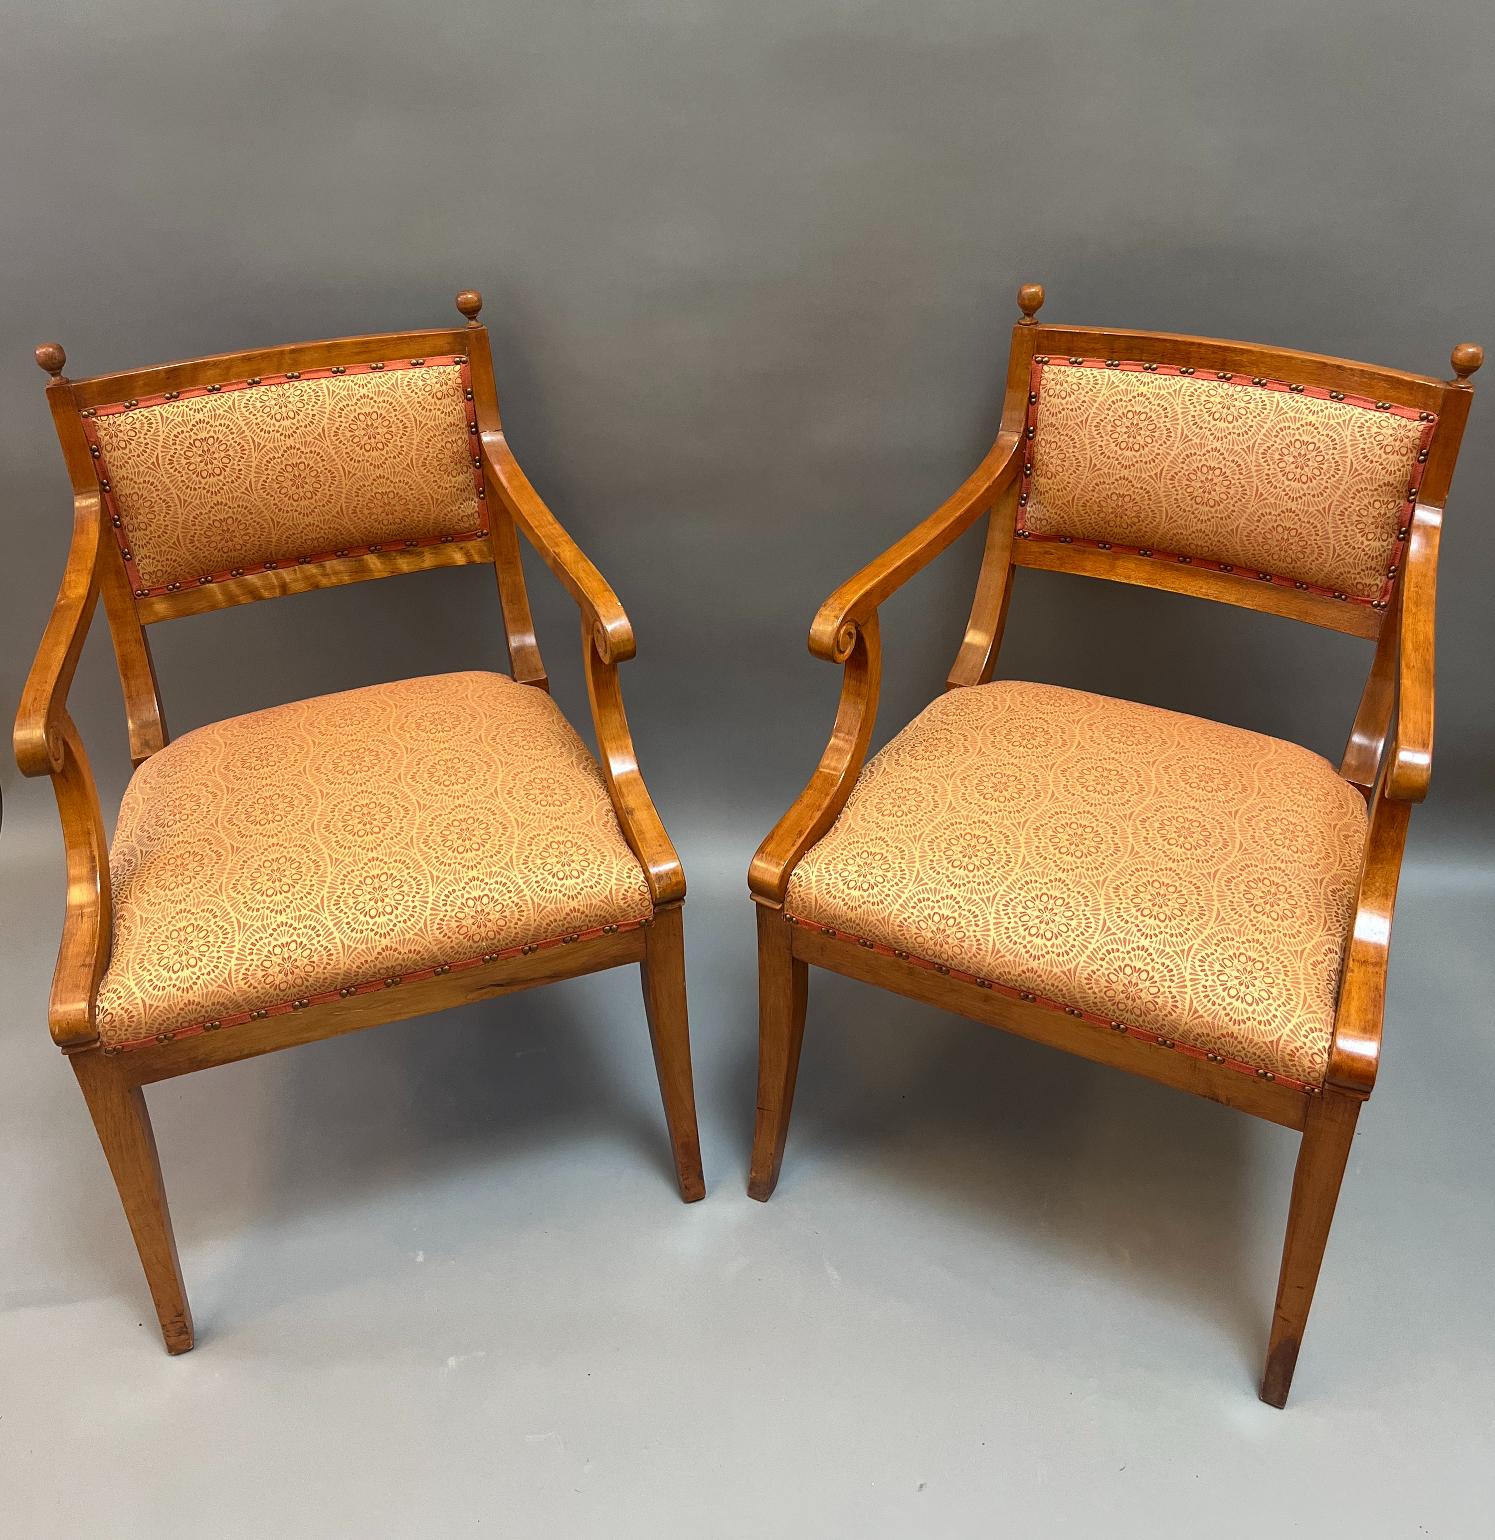 Seltener Satz von zehn neoklassizistischen Sesseln. Elegante Form mit Säbelbeinen und einfachen Armen. Hergestellt aus wunderschöner goldfarbener Birke. Äußerst komfortabel. Kürzlich neu gepolstert. Dänemark, um 1840
Maße: 32,5